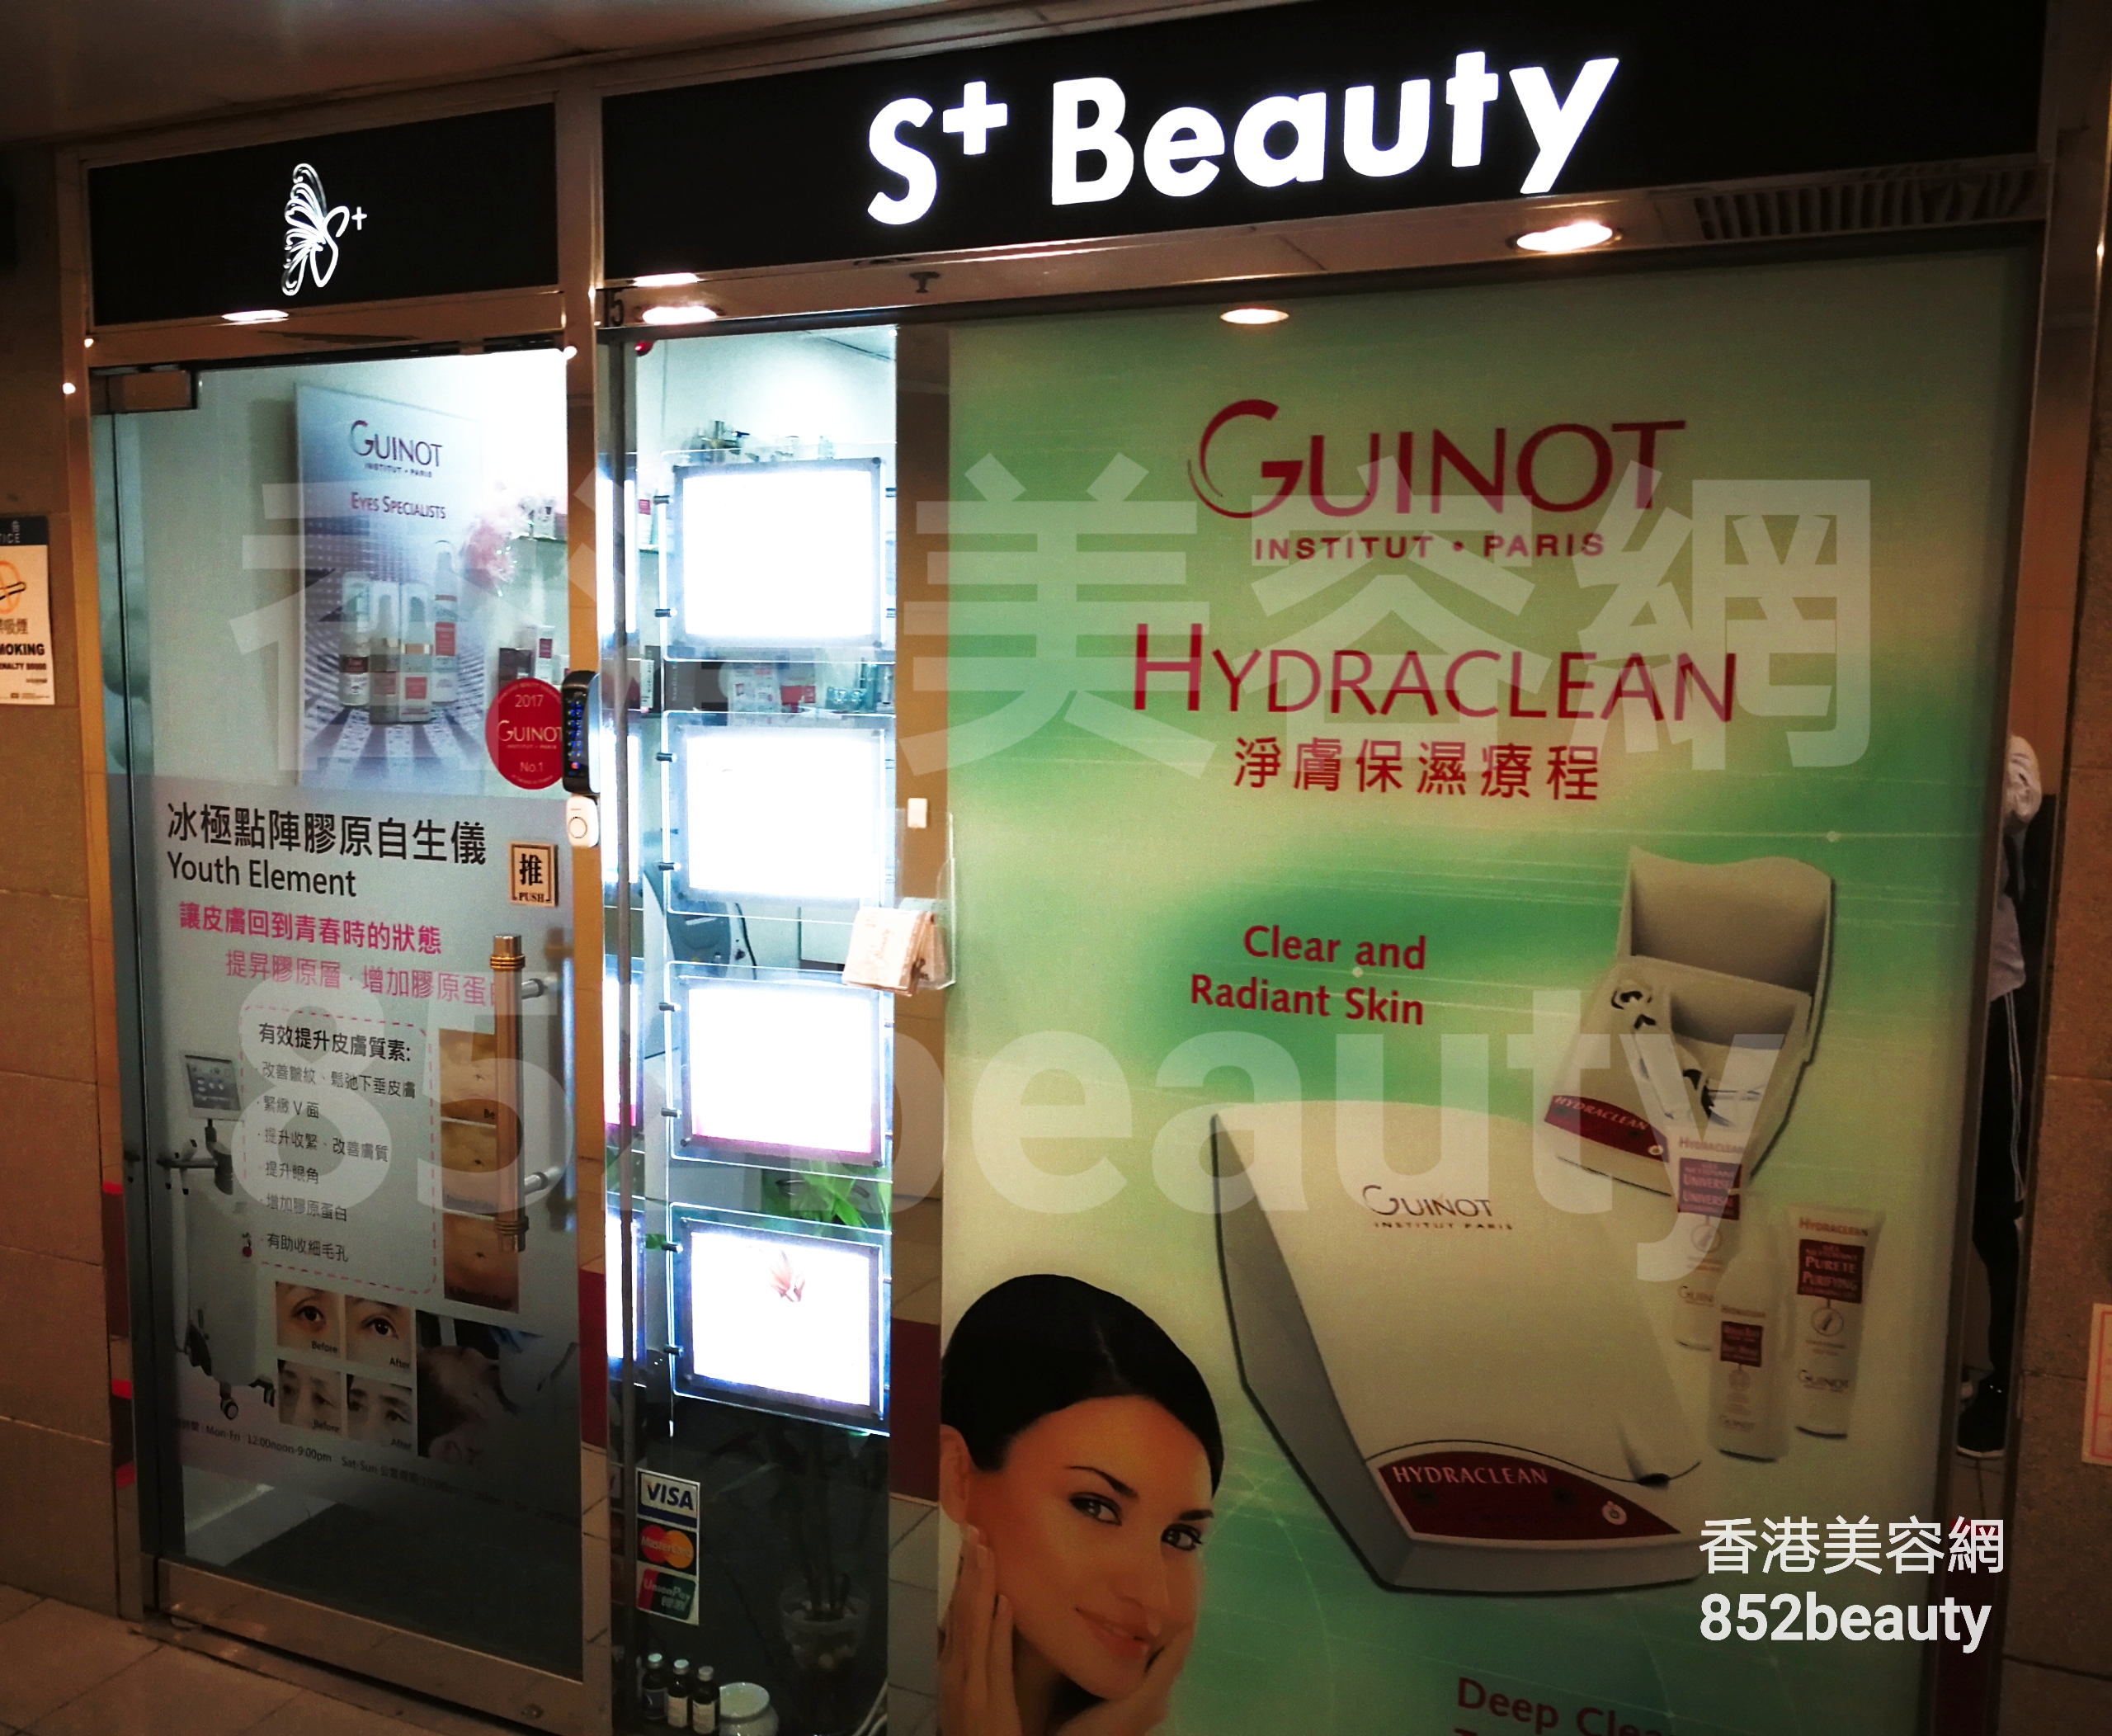 Beauty Salon: S+ Beauty